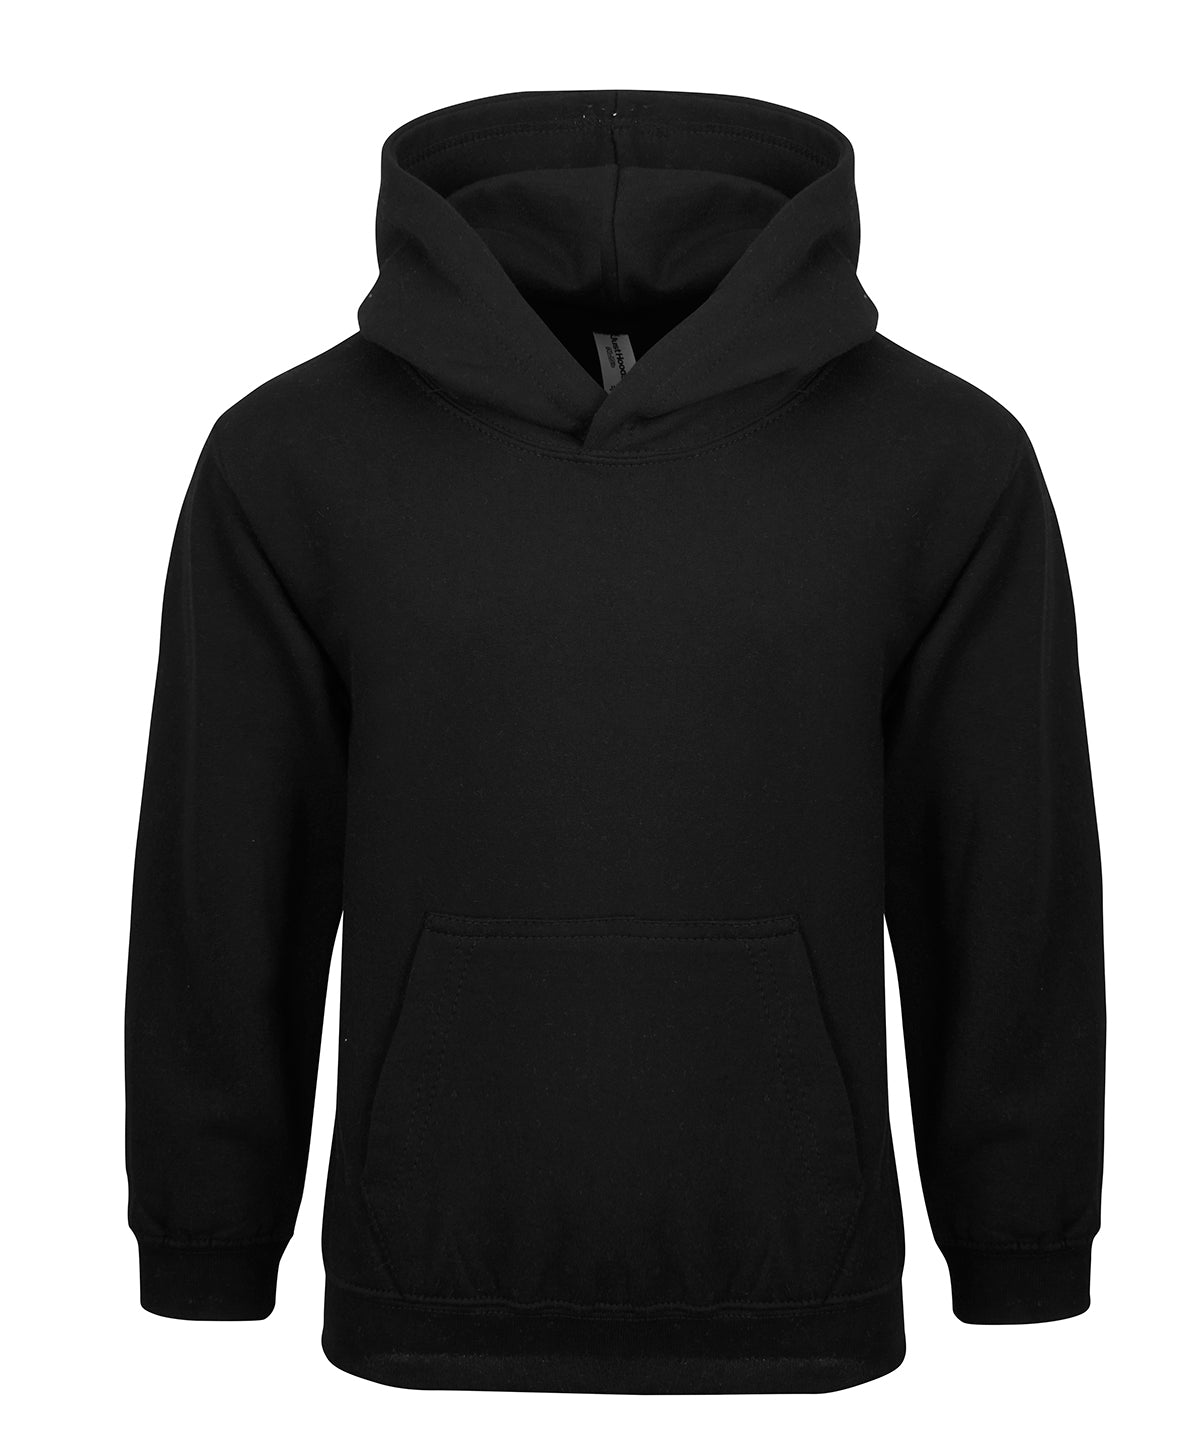 Personalised Hoodies - Light Grey AWDis Just Hoods Kids hoodie